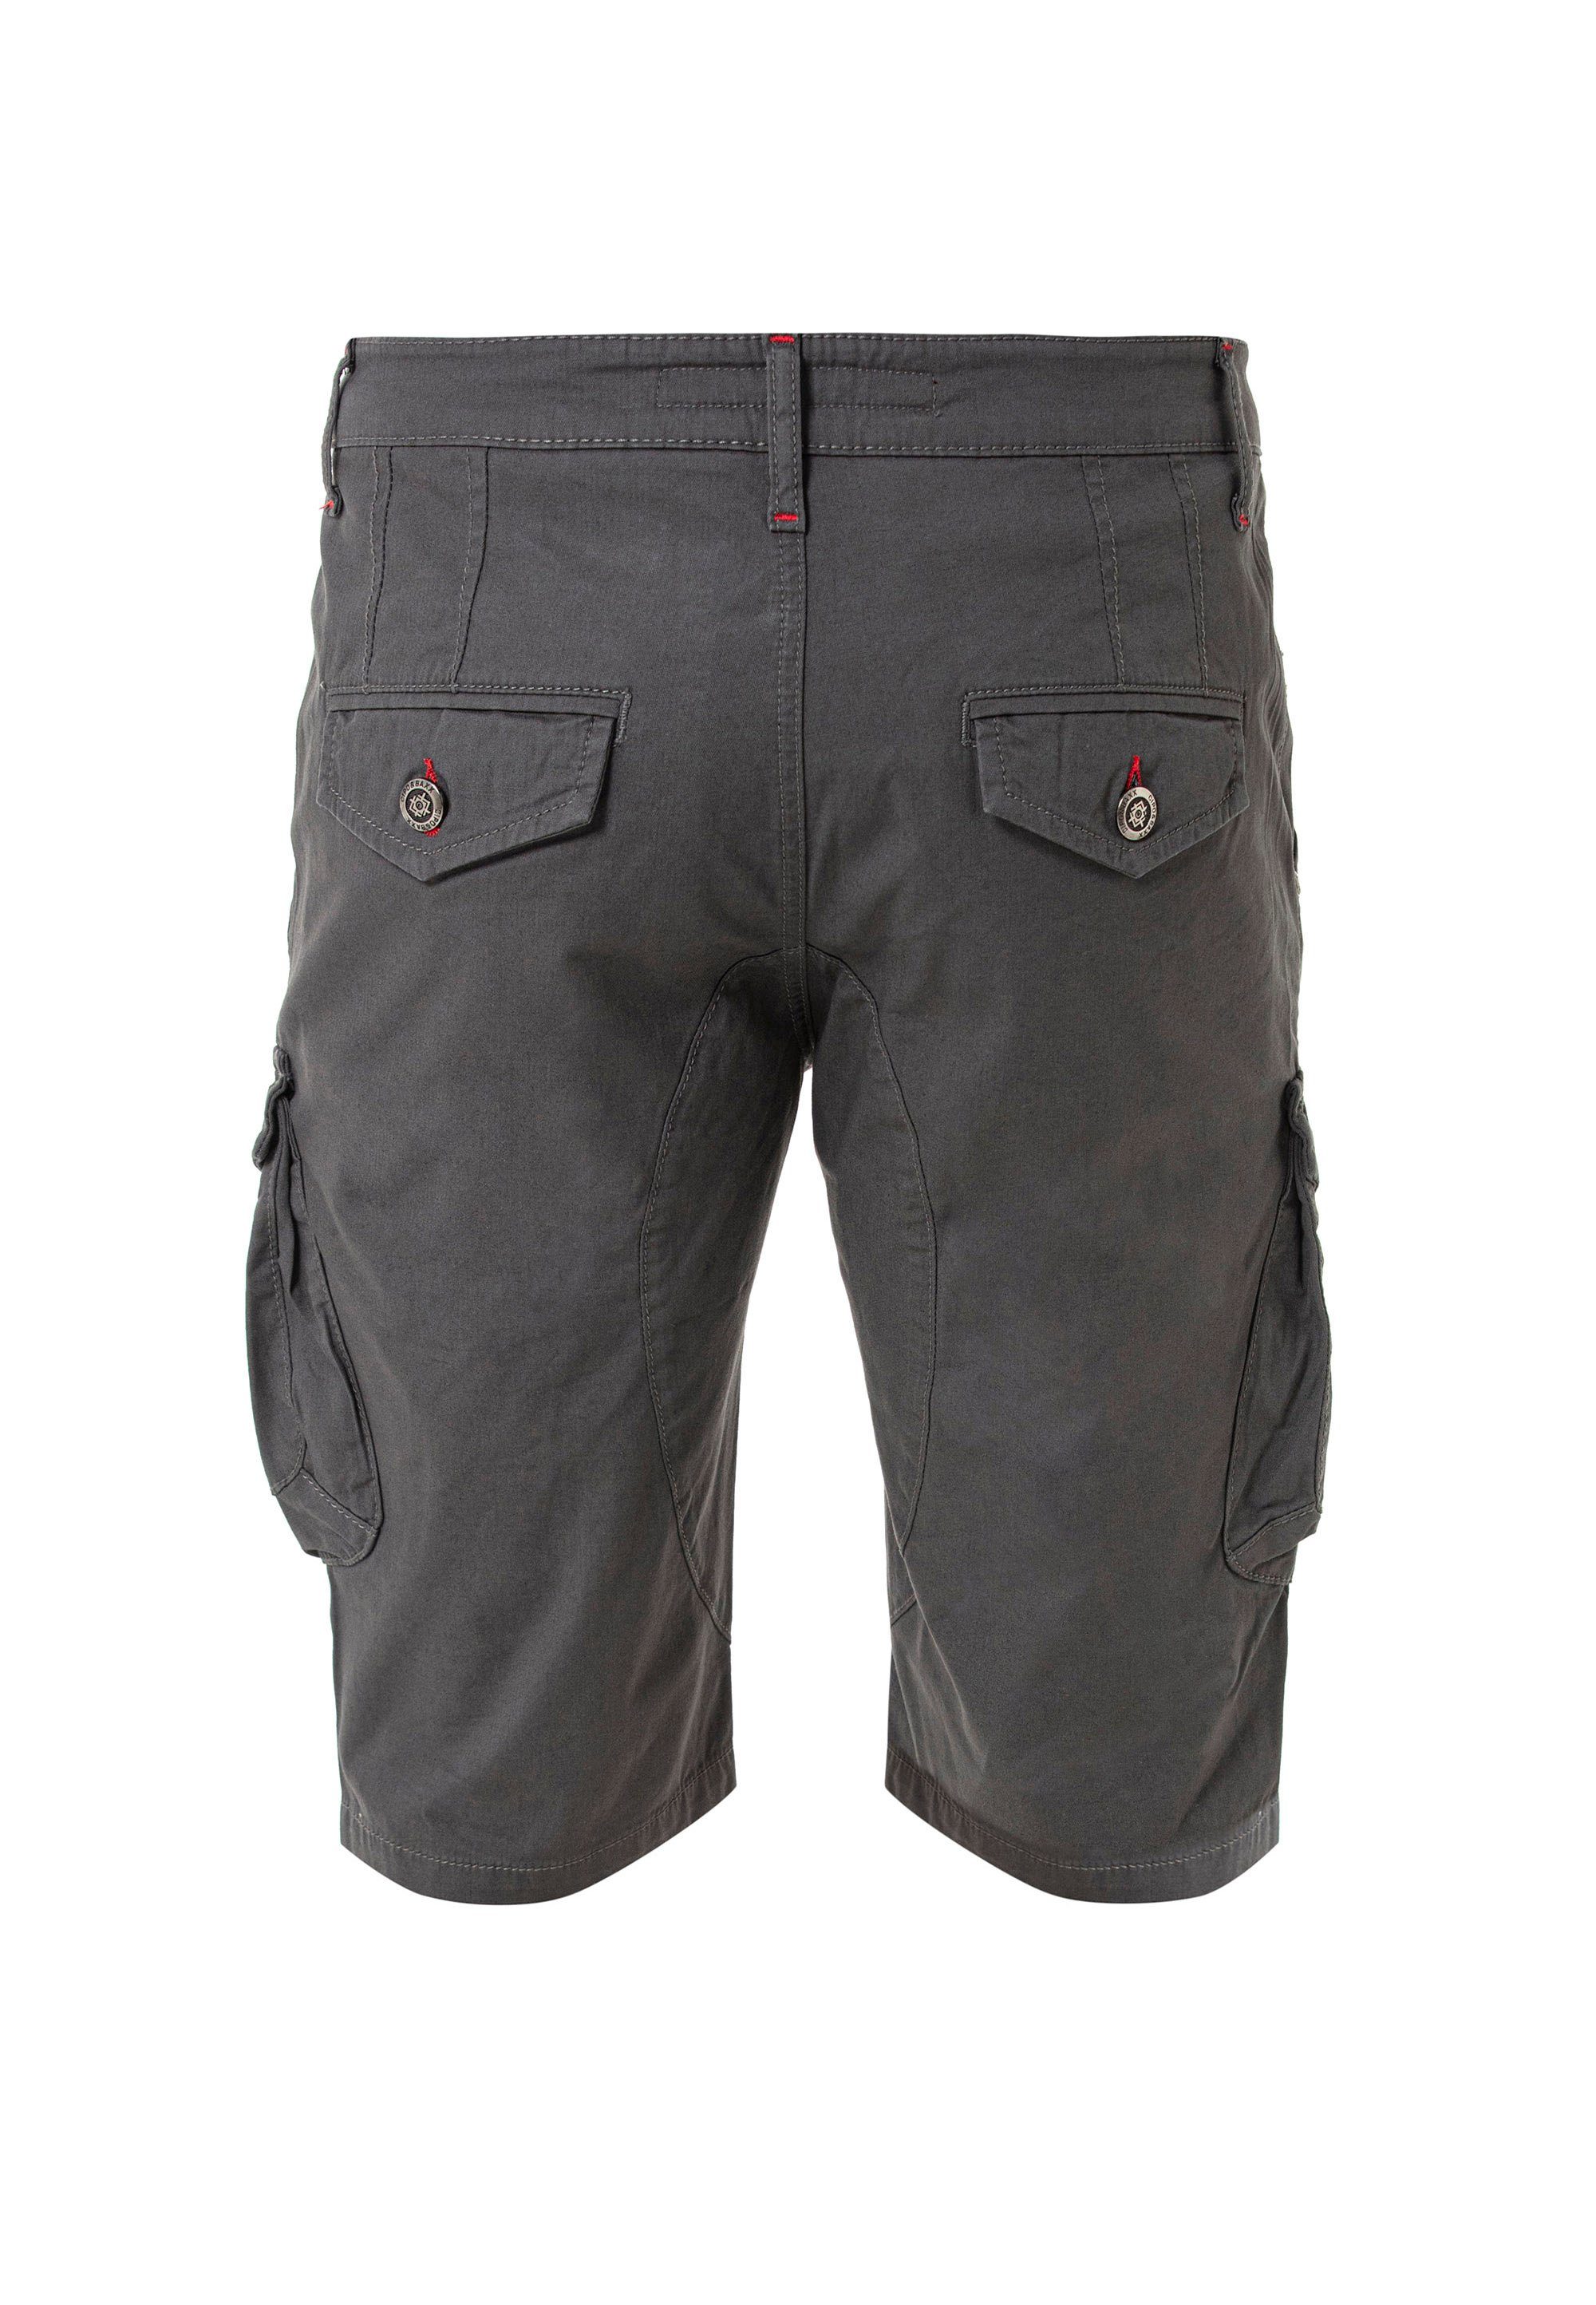 Cipo & Baxx Shorts mit grau Cargotaschen praktischen